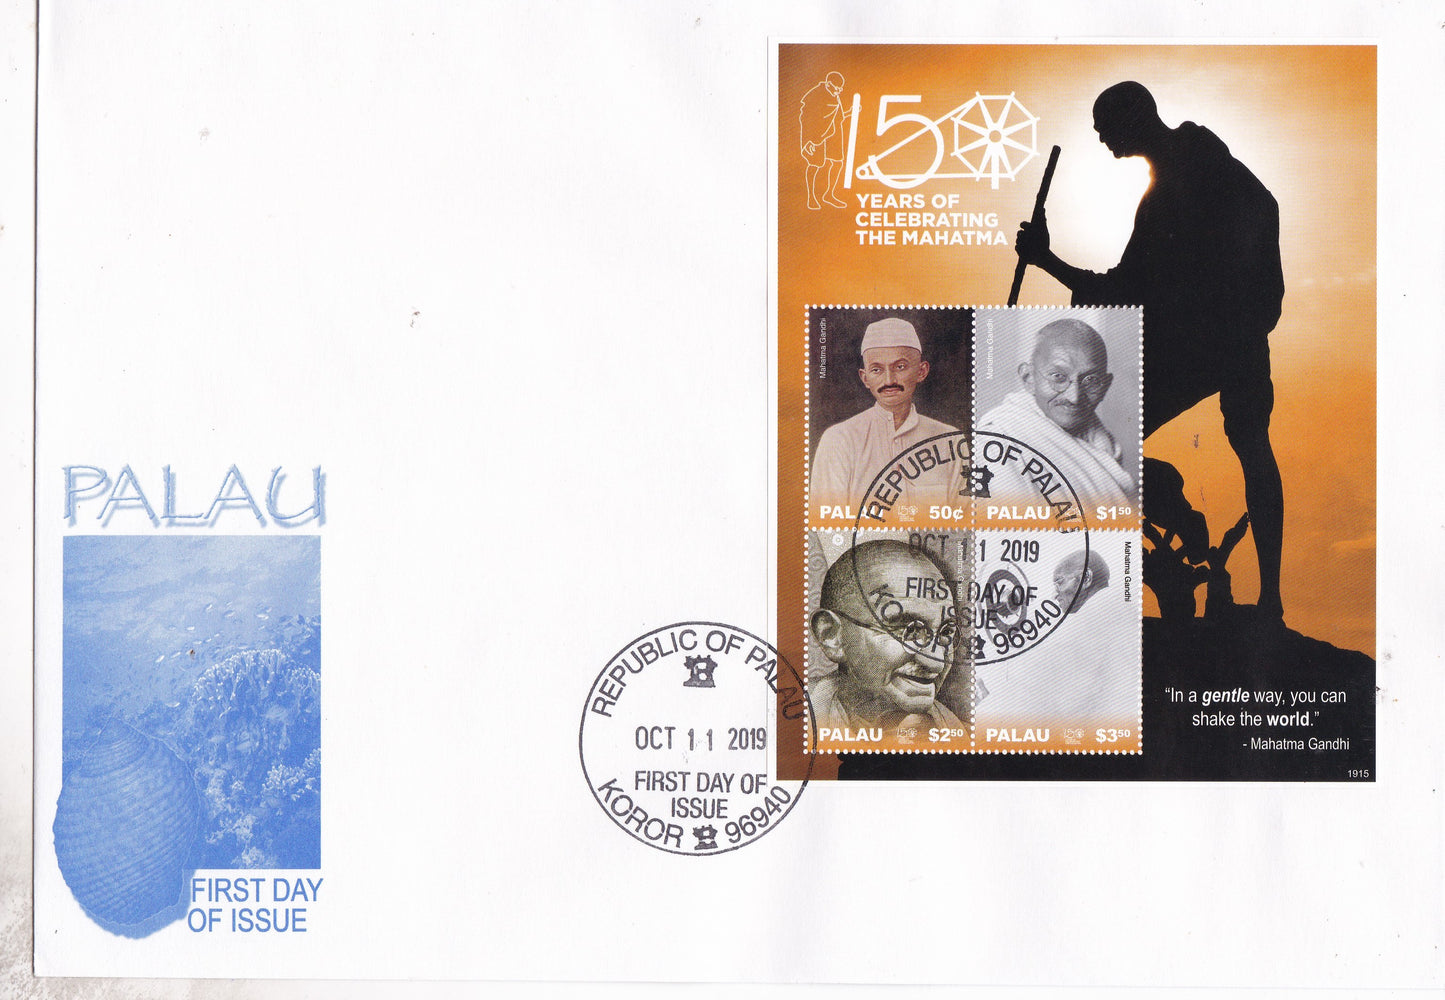 Palau-150th Birth Anniversary of Mahatma Gandhi FDC.